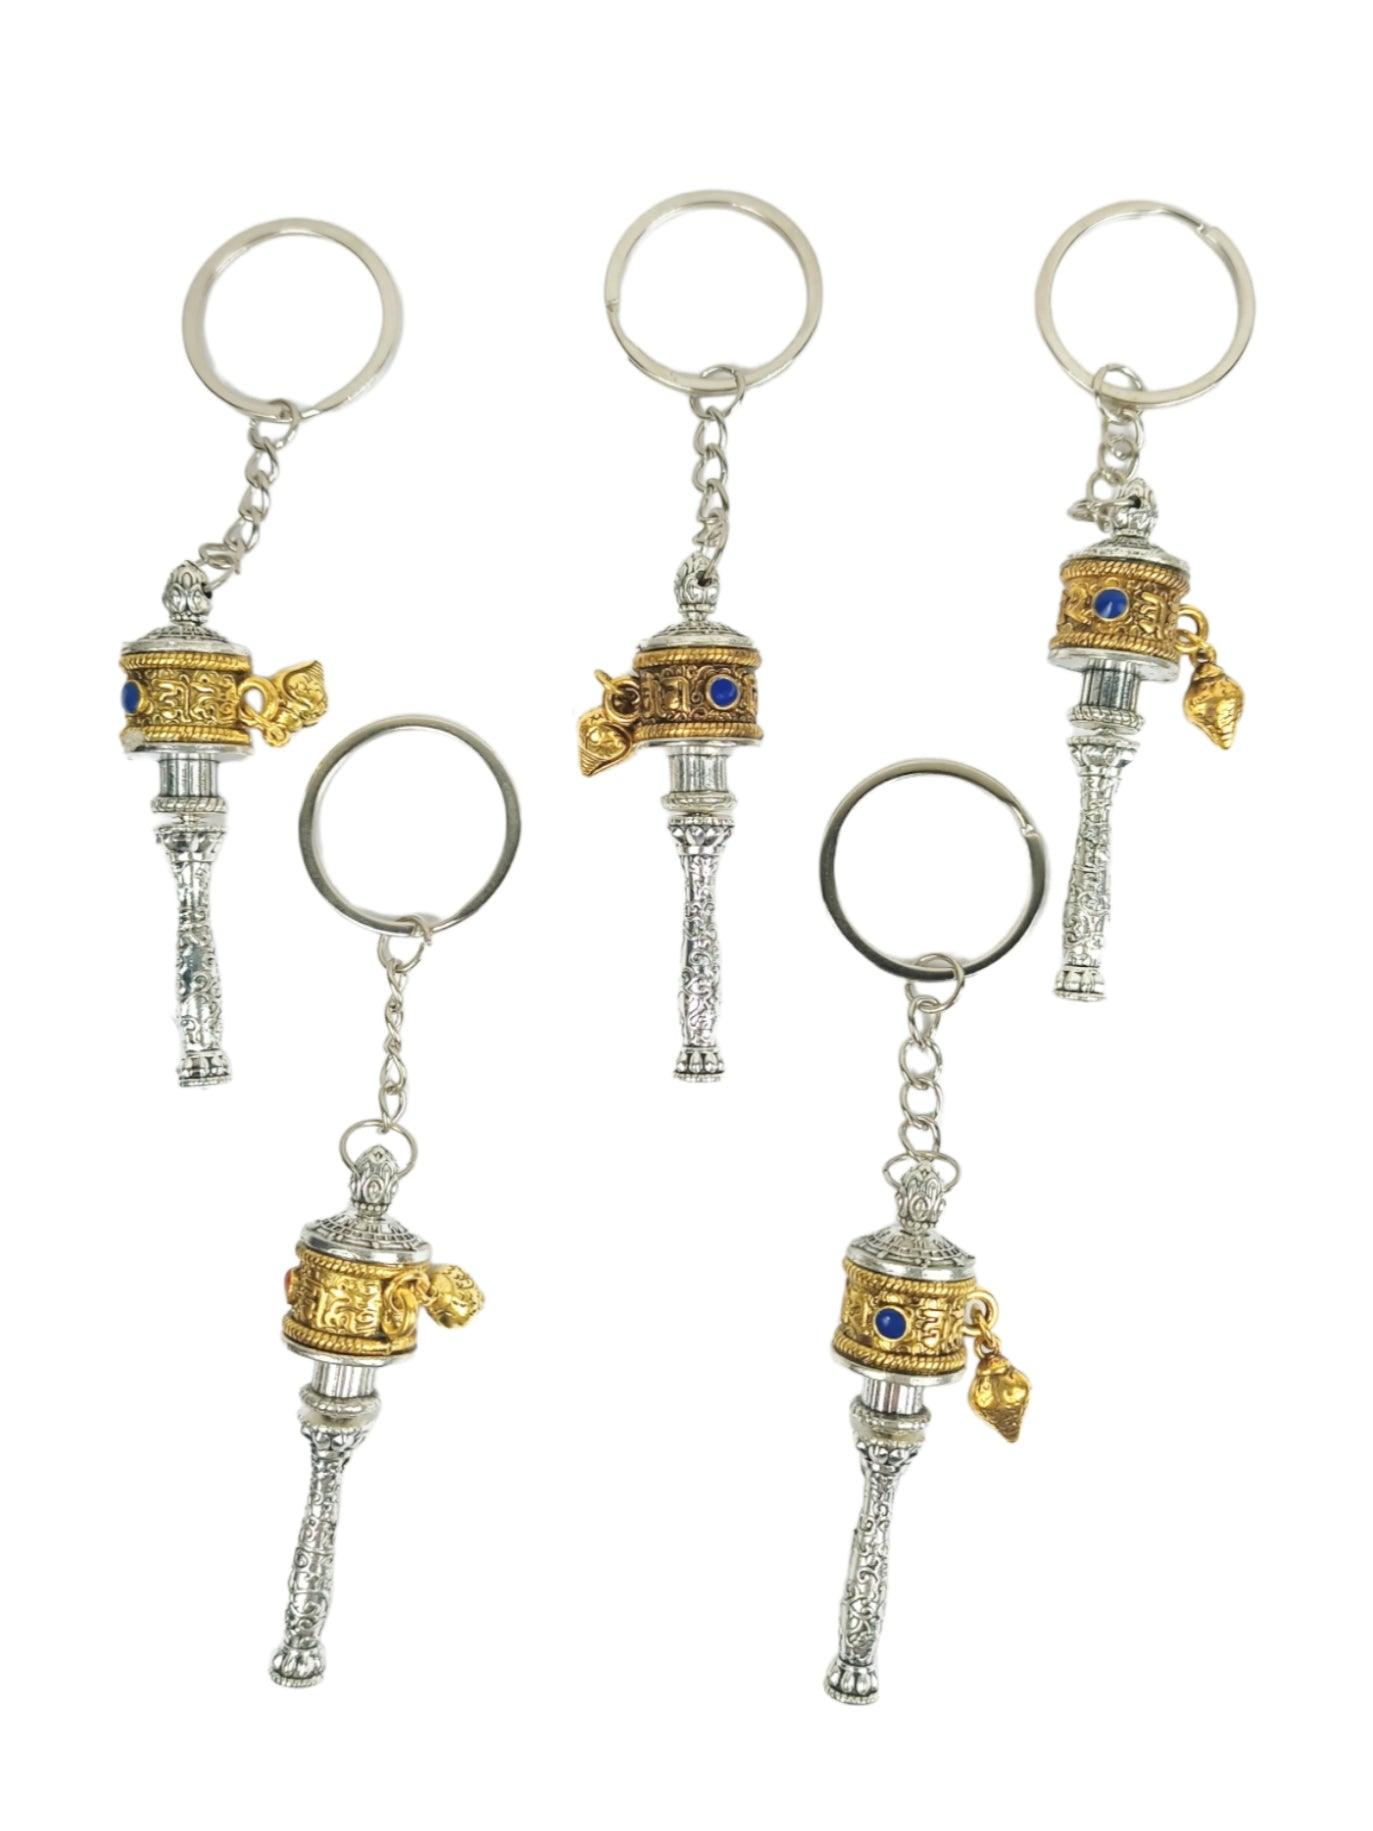 Buddhist Prayer Wheel Keychain | Julley keychain | Ladakh Souvenirs - ZANSKAR ARTS